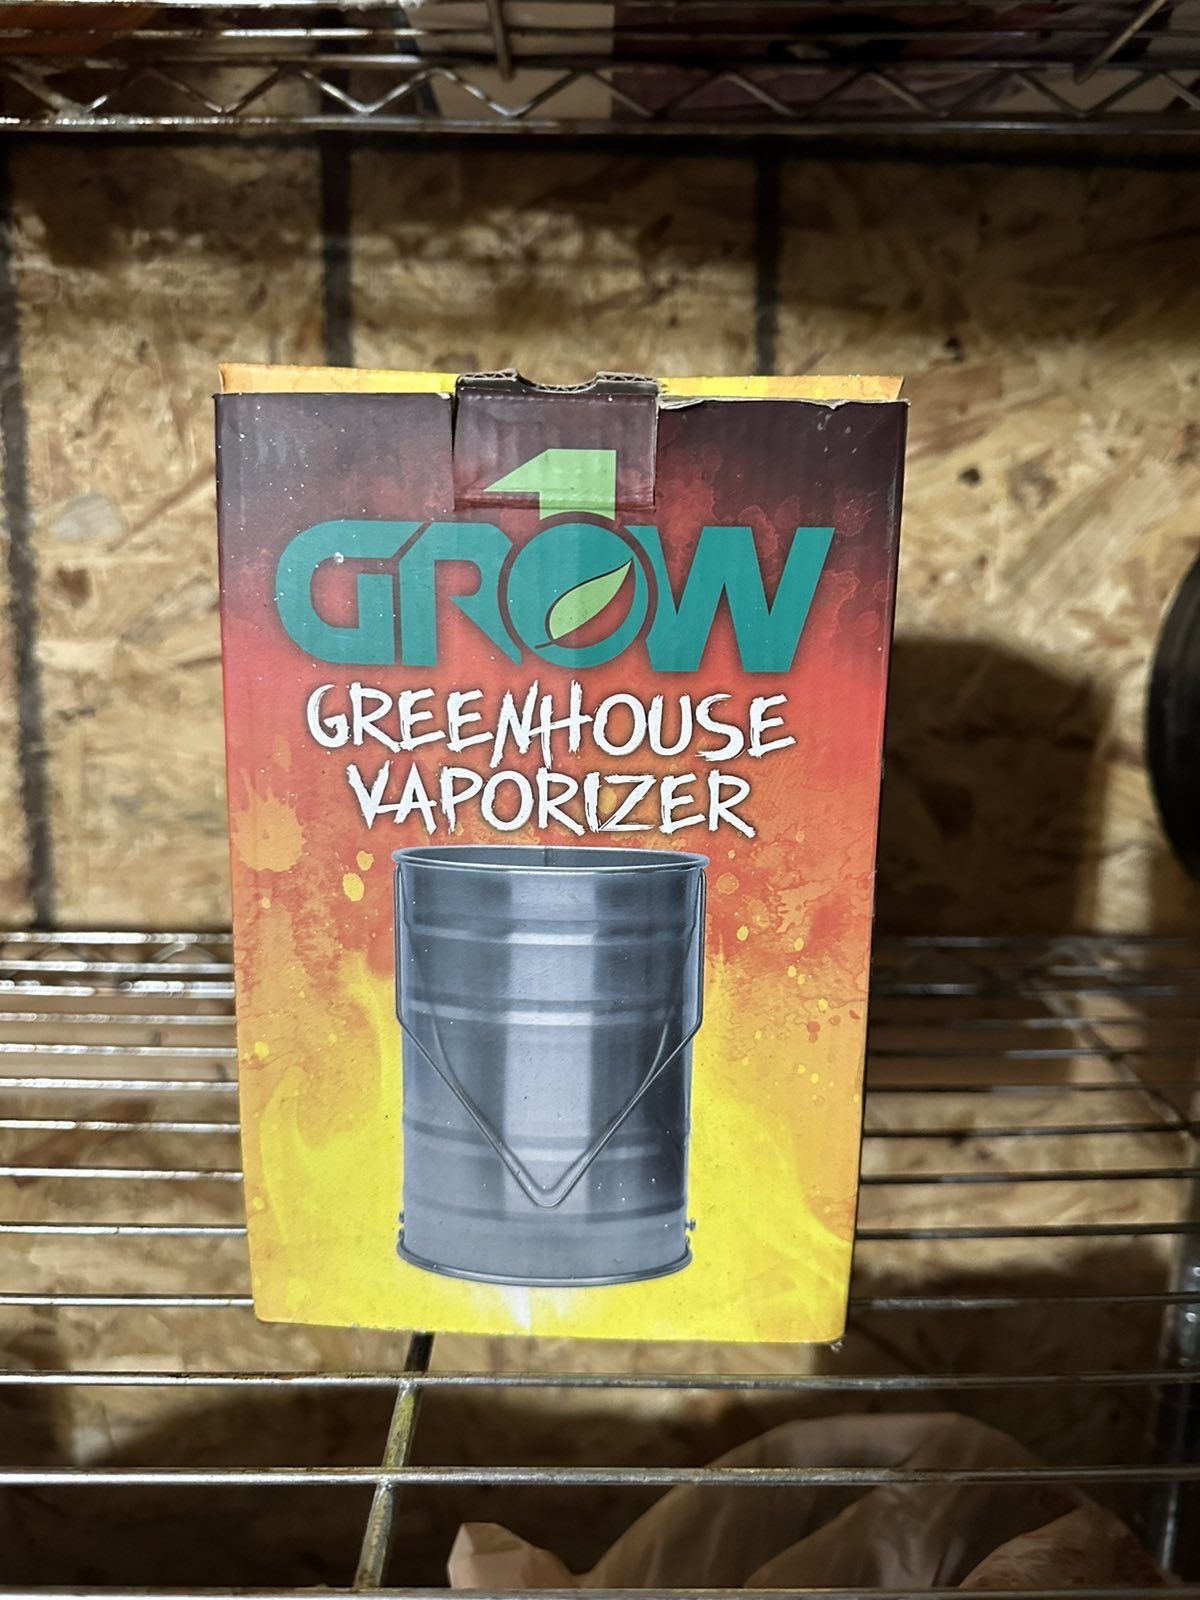 Grow 1 Greenhouse Vaporizer